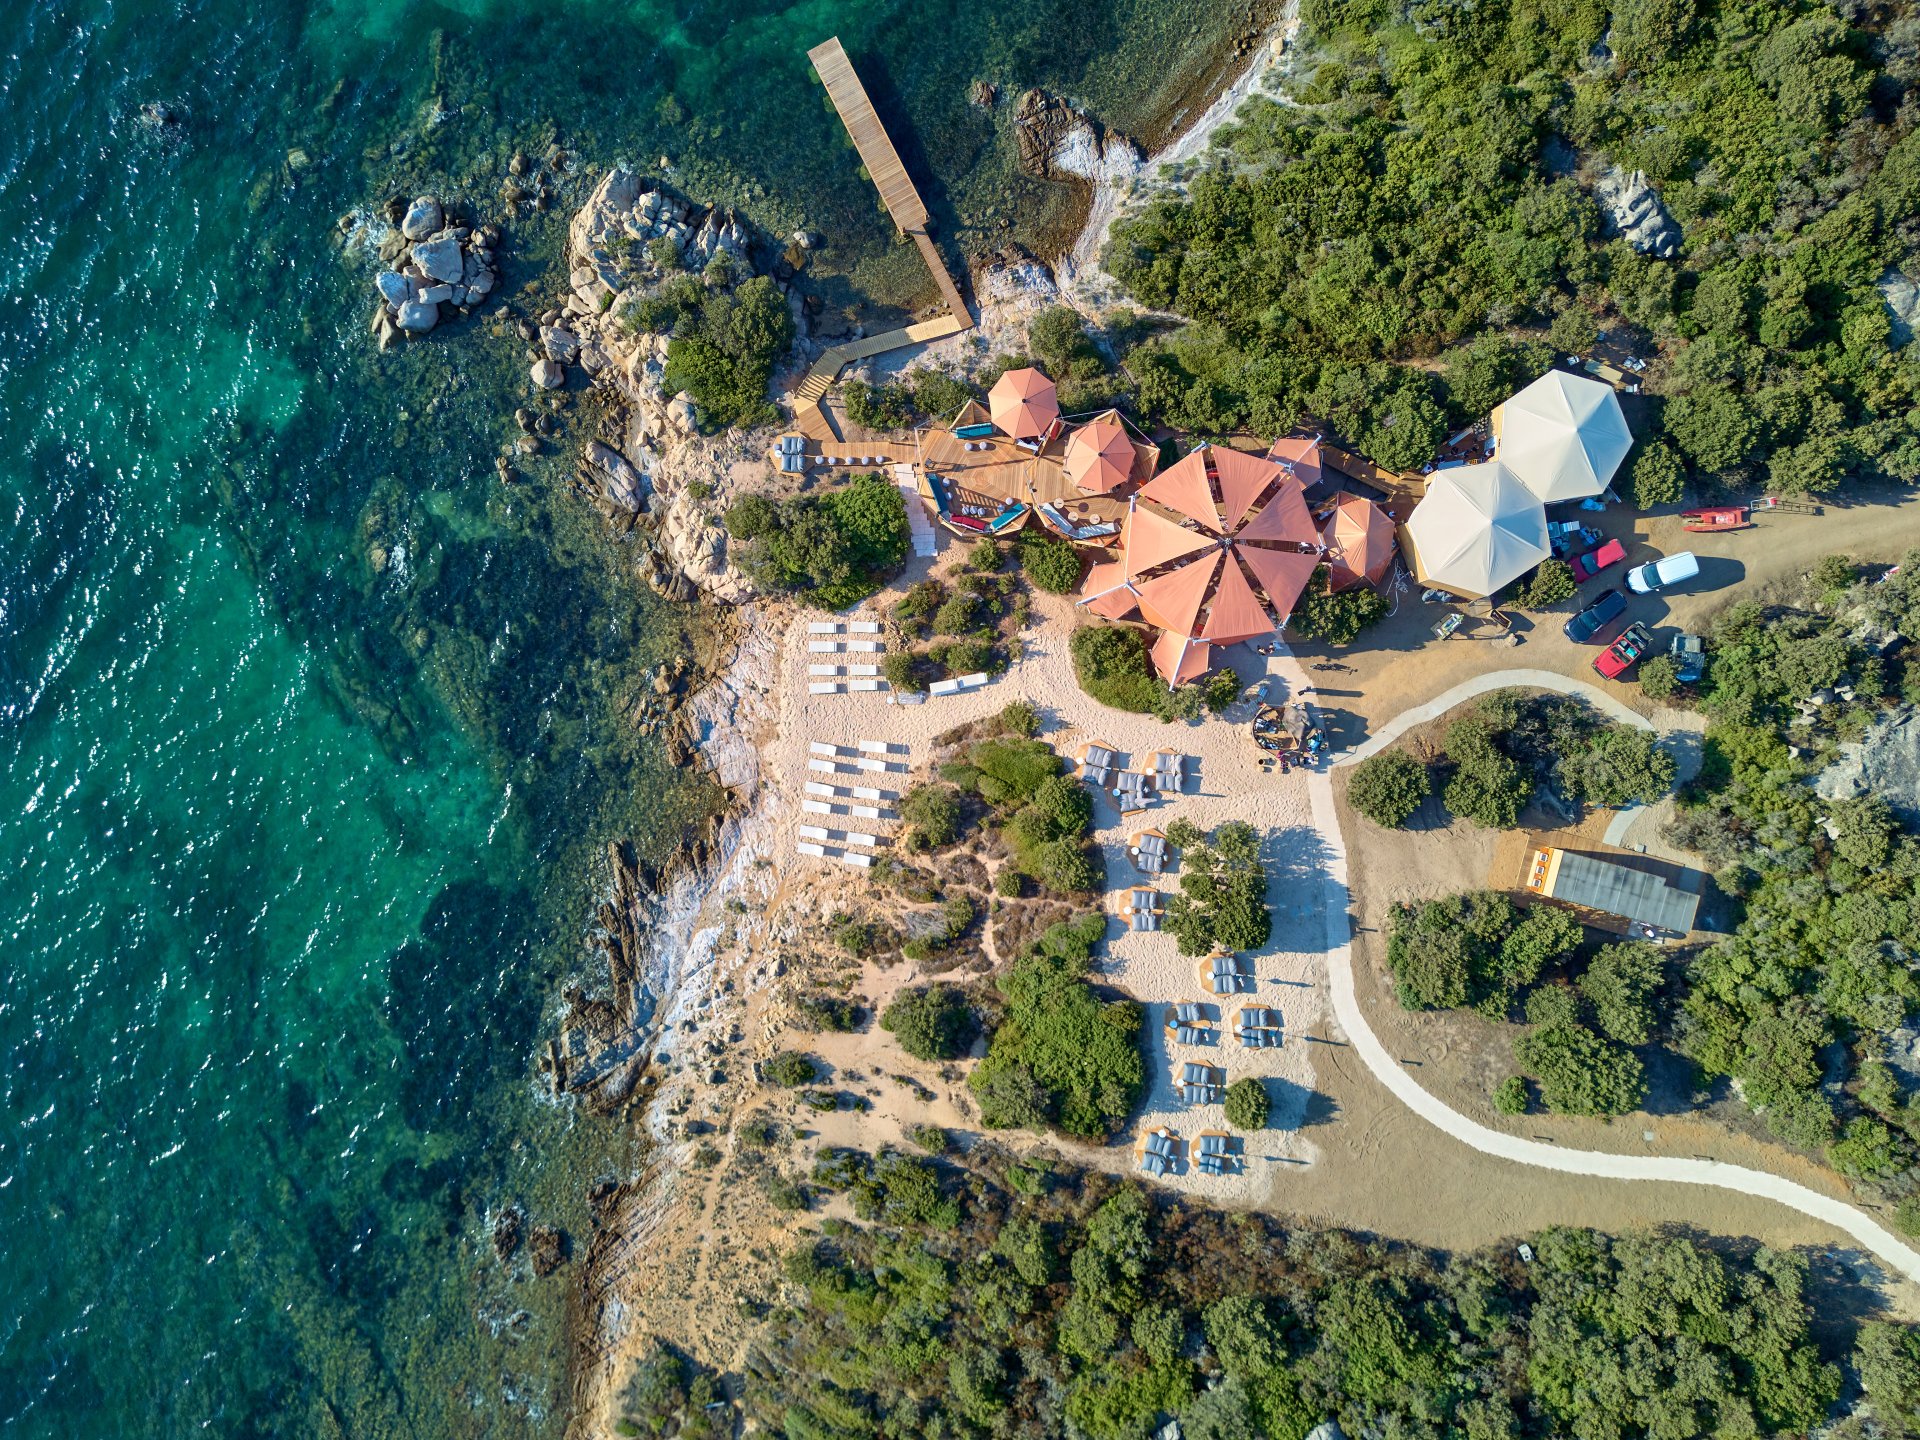 CONE Club Sardinia - SUNSQUARE special and fancy sunsailsystem